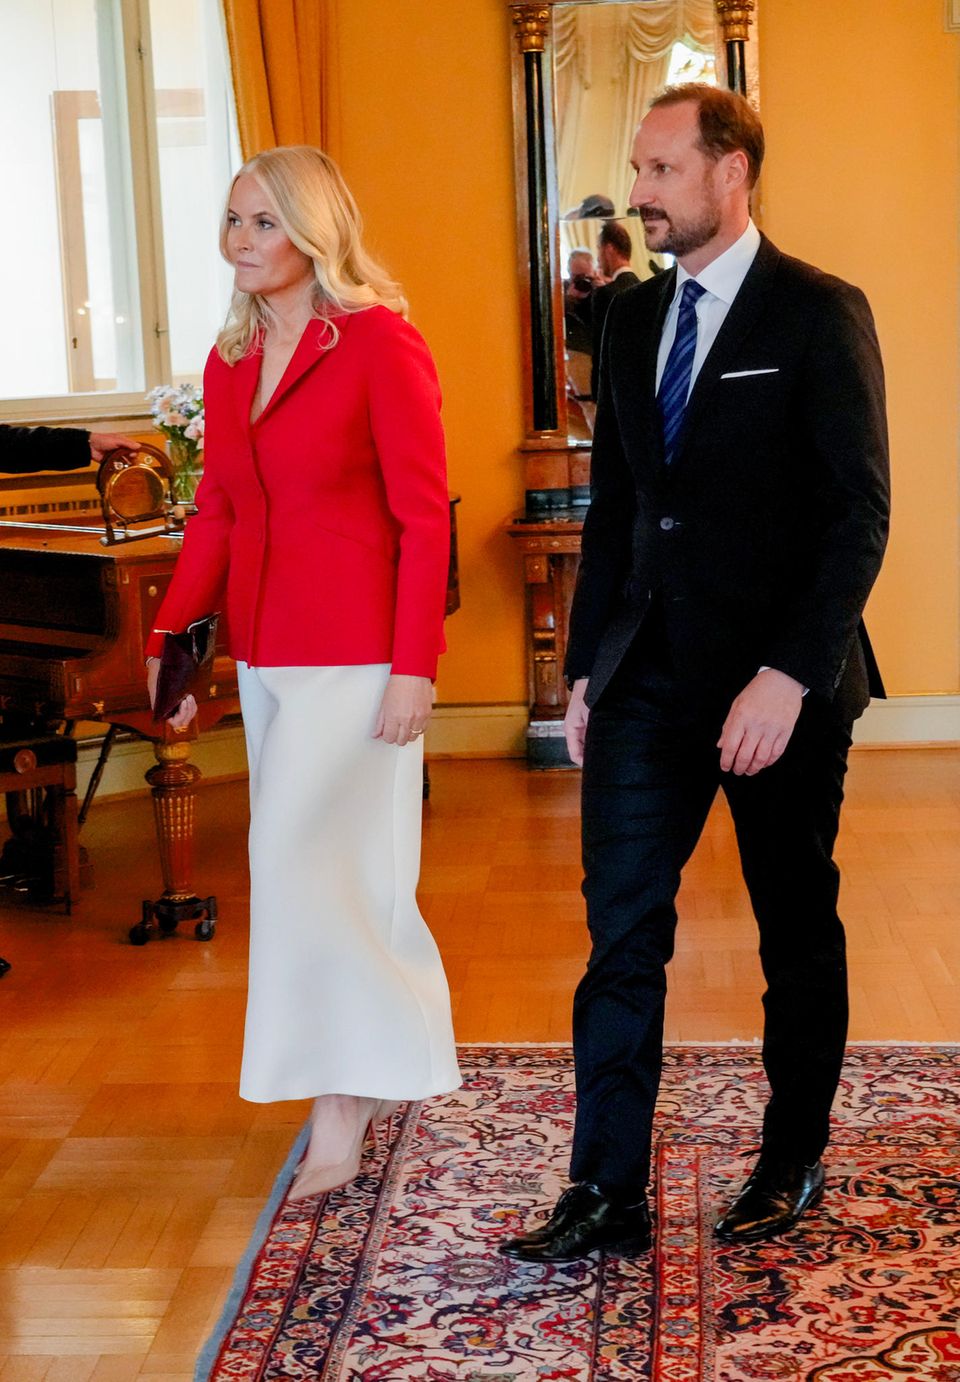 Beim Treffen in der Residenz des norwegischen Premierministers im Rahmen des Staatsbesuchs der moldauischen Präsidentin in Norwegen setzt Mette-Marit auf einen trendigen Satinrock im eleganten Weiß.